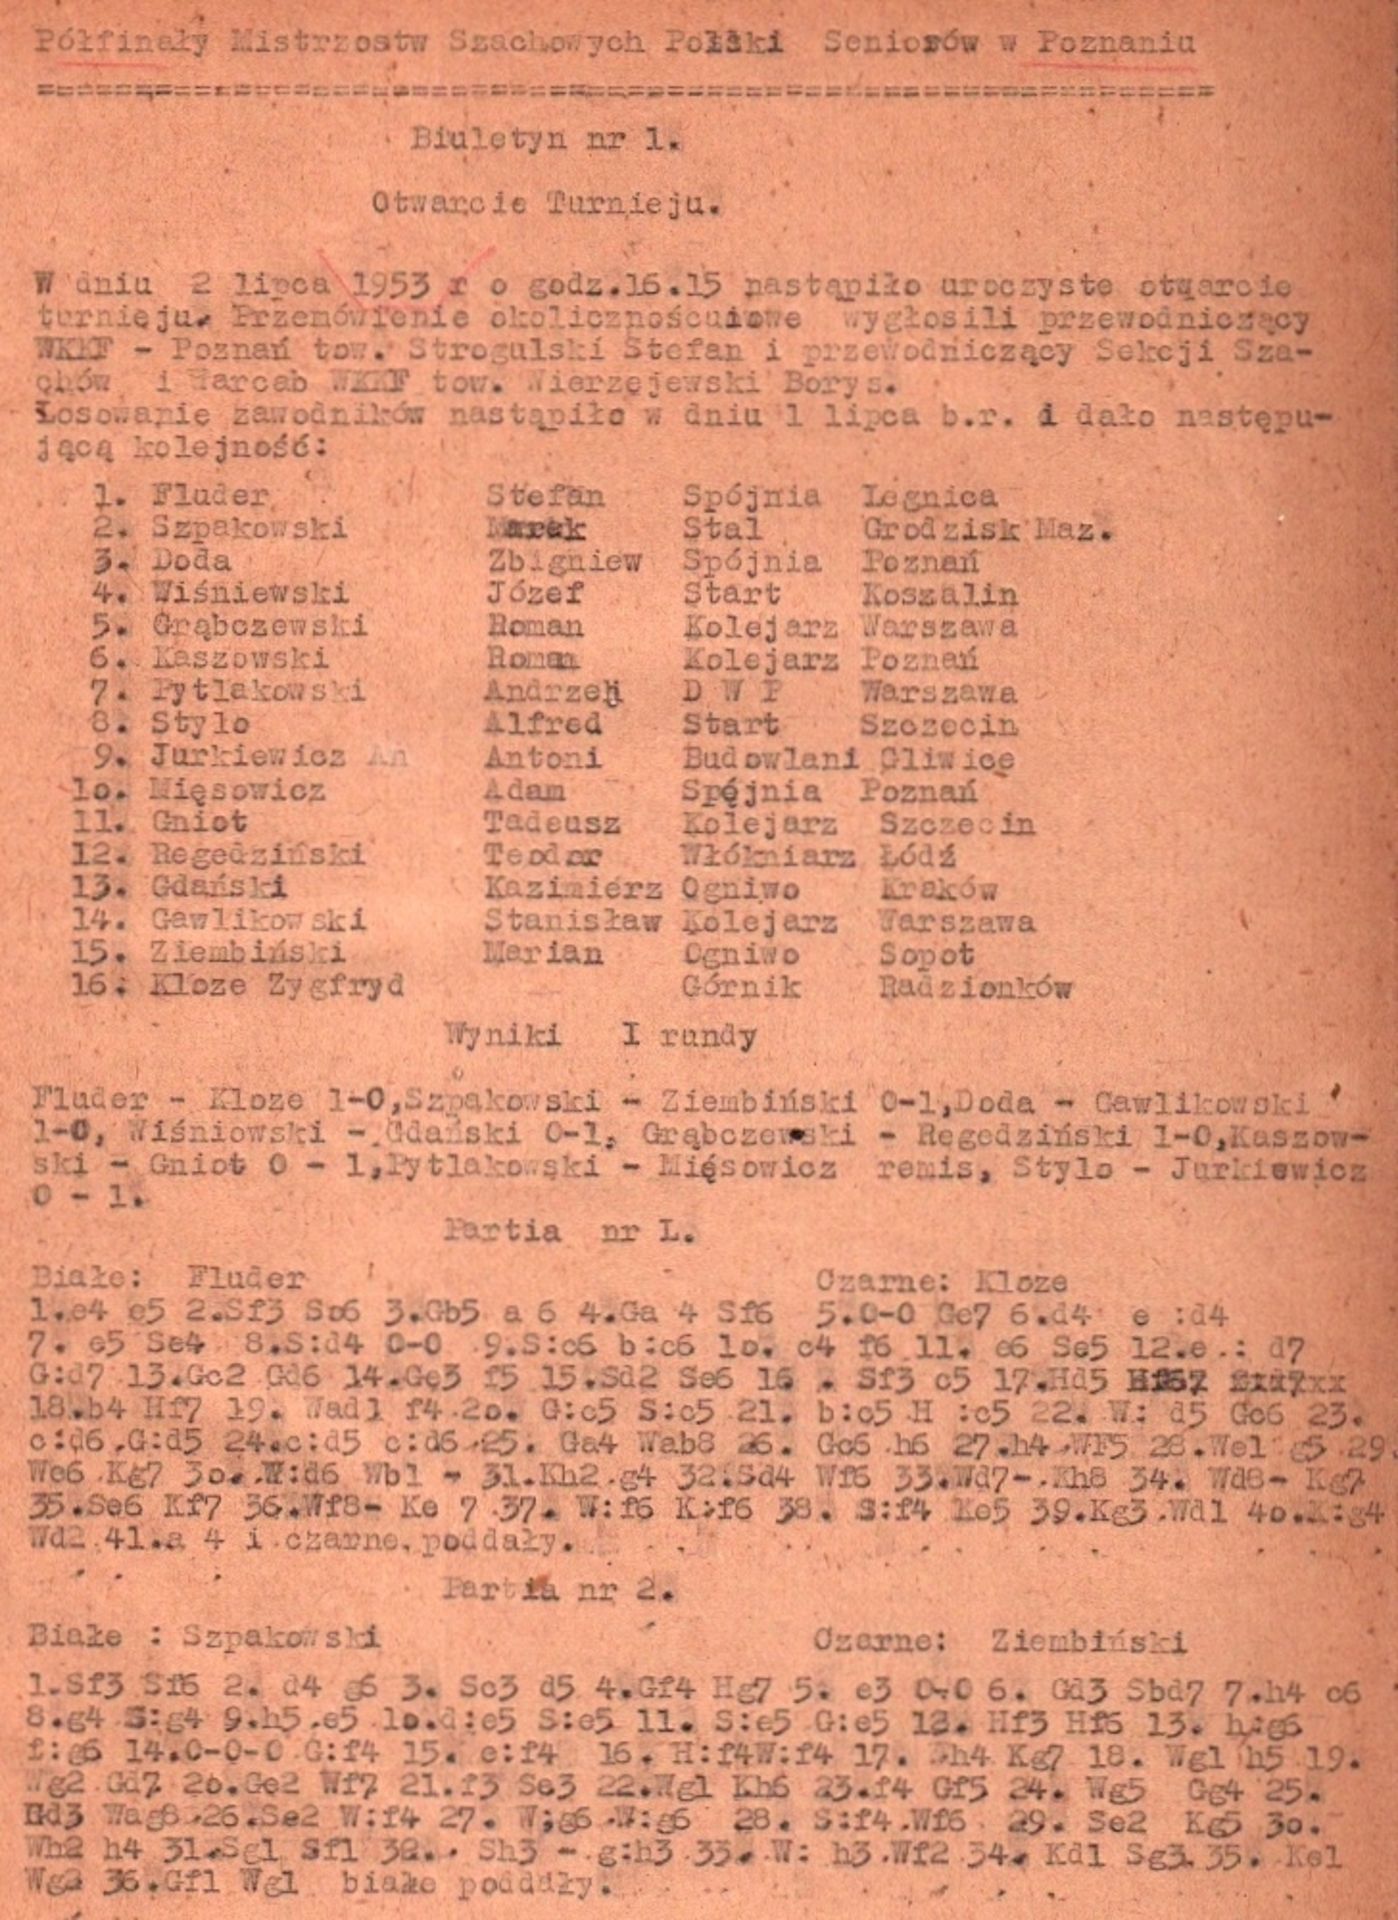 Posen 1953. Pólfinaly Mistrzostw Szachowych Polski Seniorów Poznaniuw. Bulletin Nr. 1 – 13. Ohne Ort